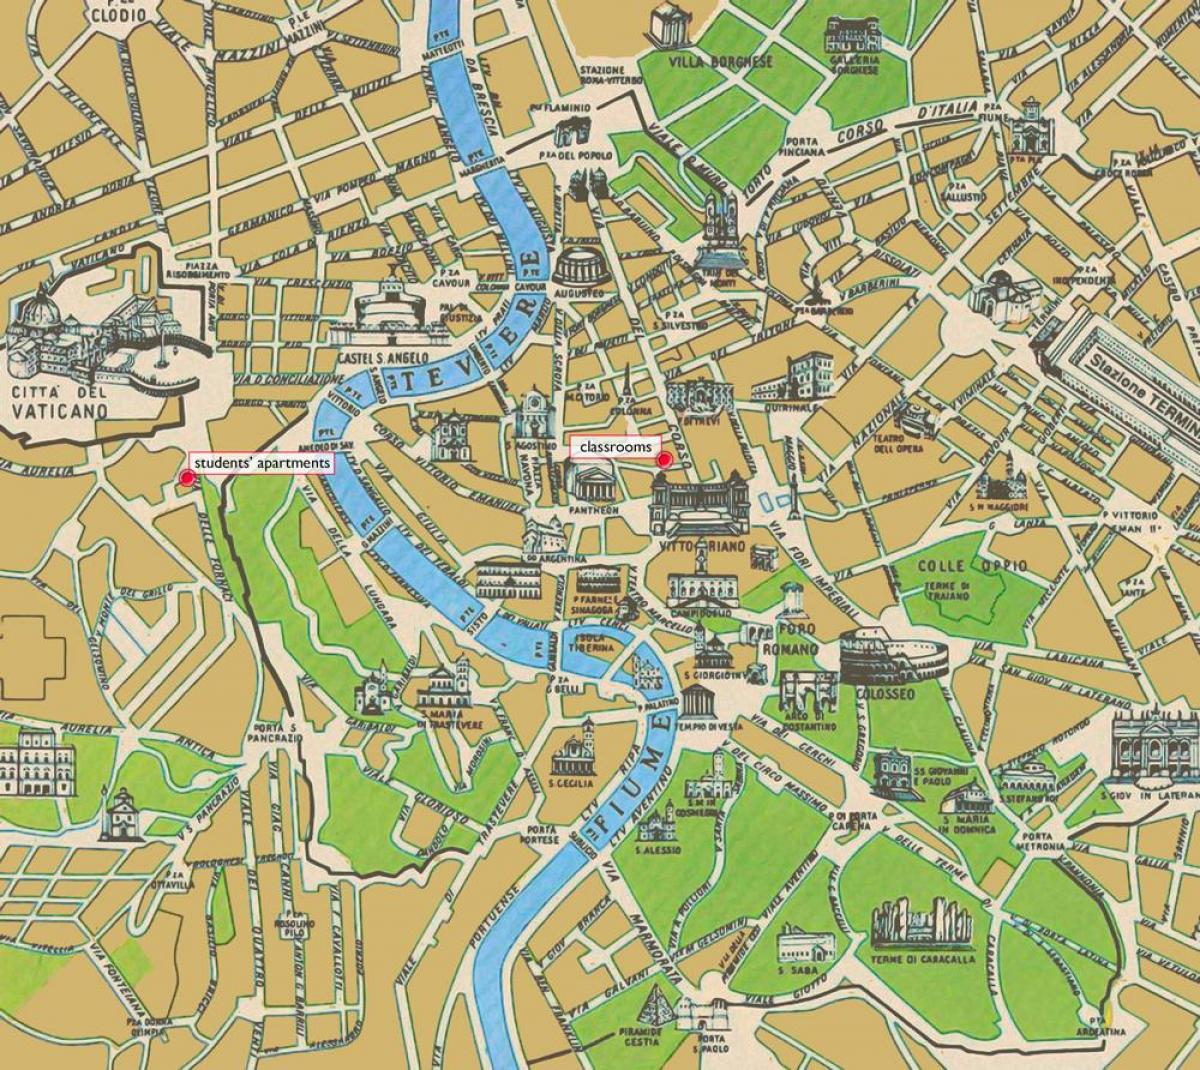 Mappa del centro storico di Roma 